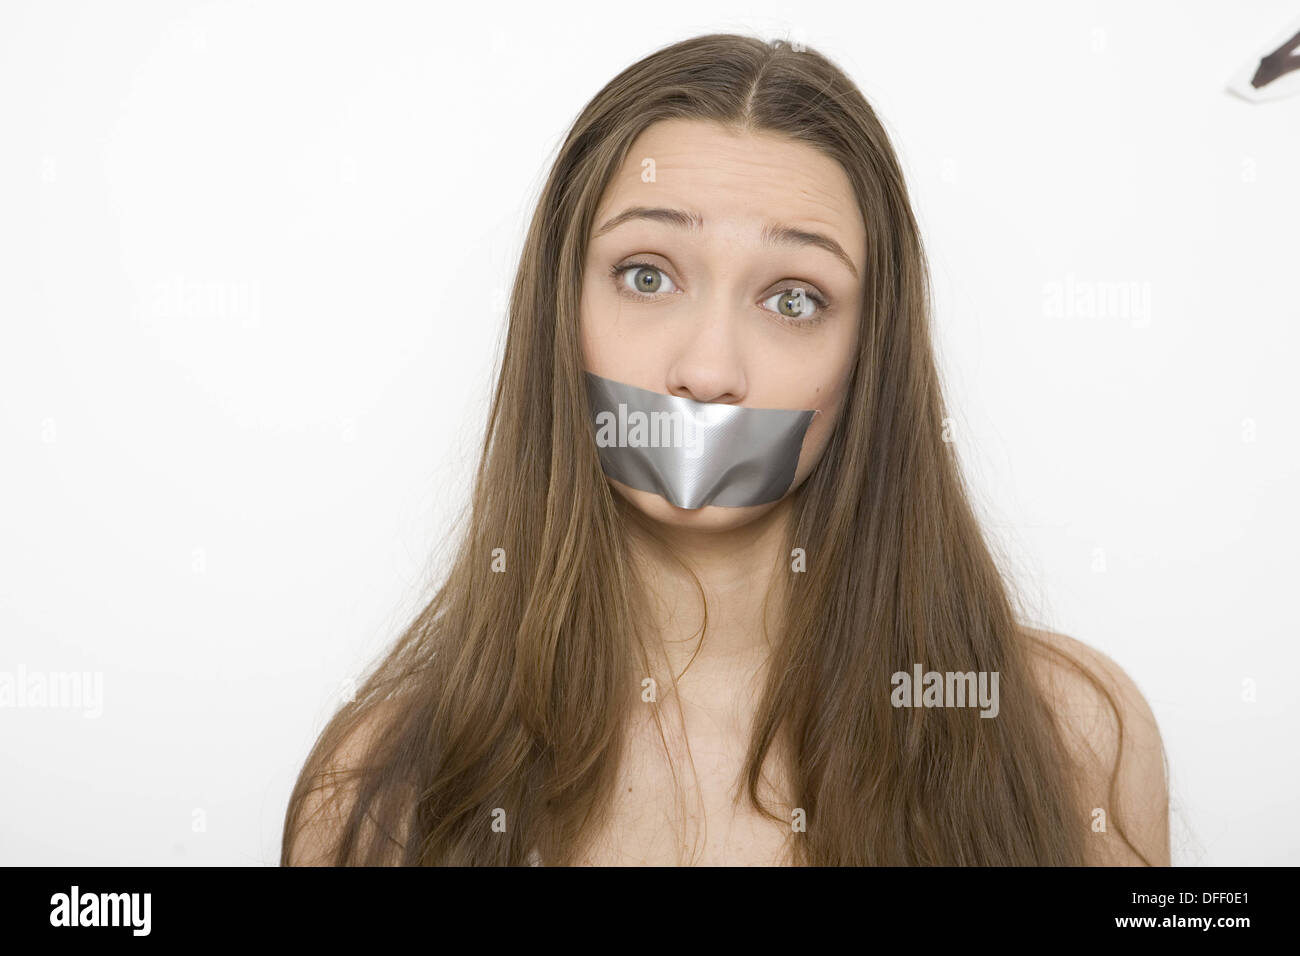 Teenager-Mädchen mit Gaffer-Tape über den Mund und weit aufgerissenen Augen  Ausdruck Stockfotografie - Alamy